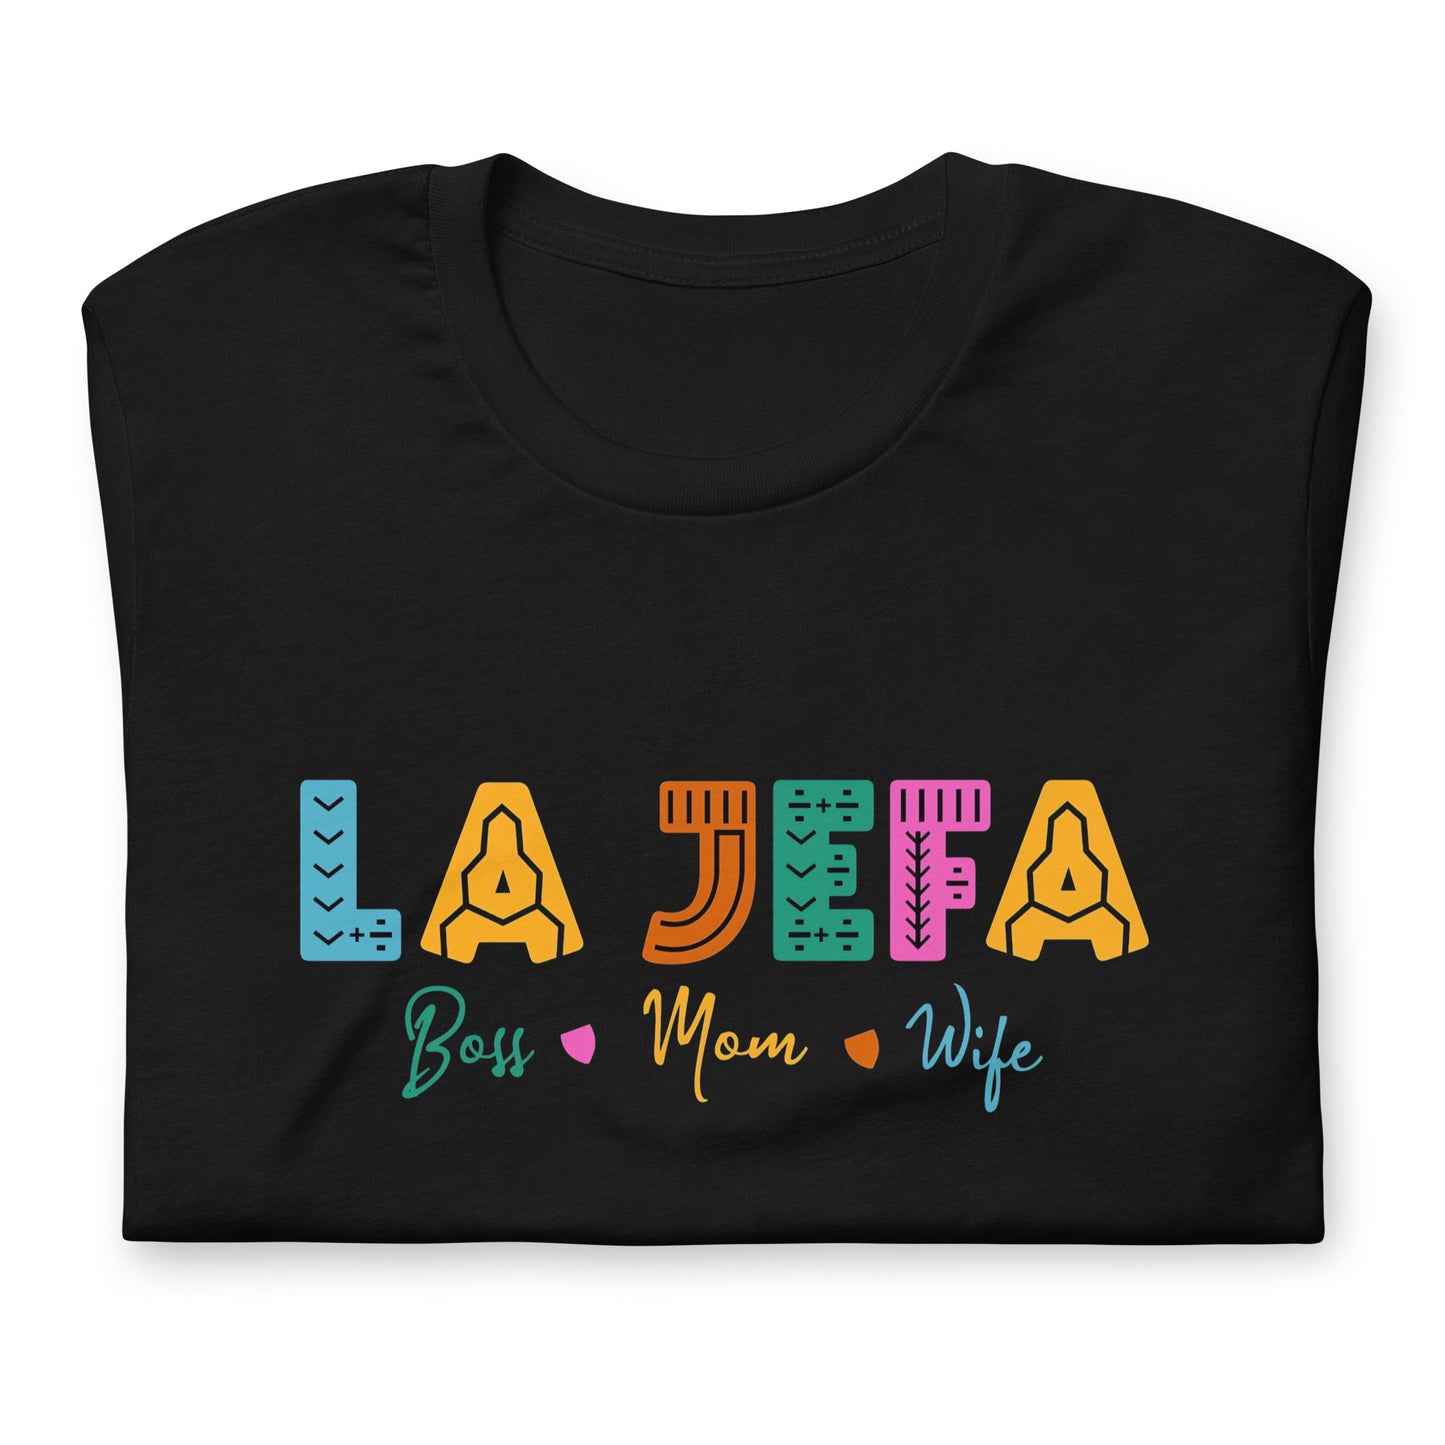 Playera de La Jefa ,Descubre calidad excepcional y estampados duraderos. Encuentra estilo y orgullo en cada prenda.